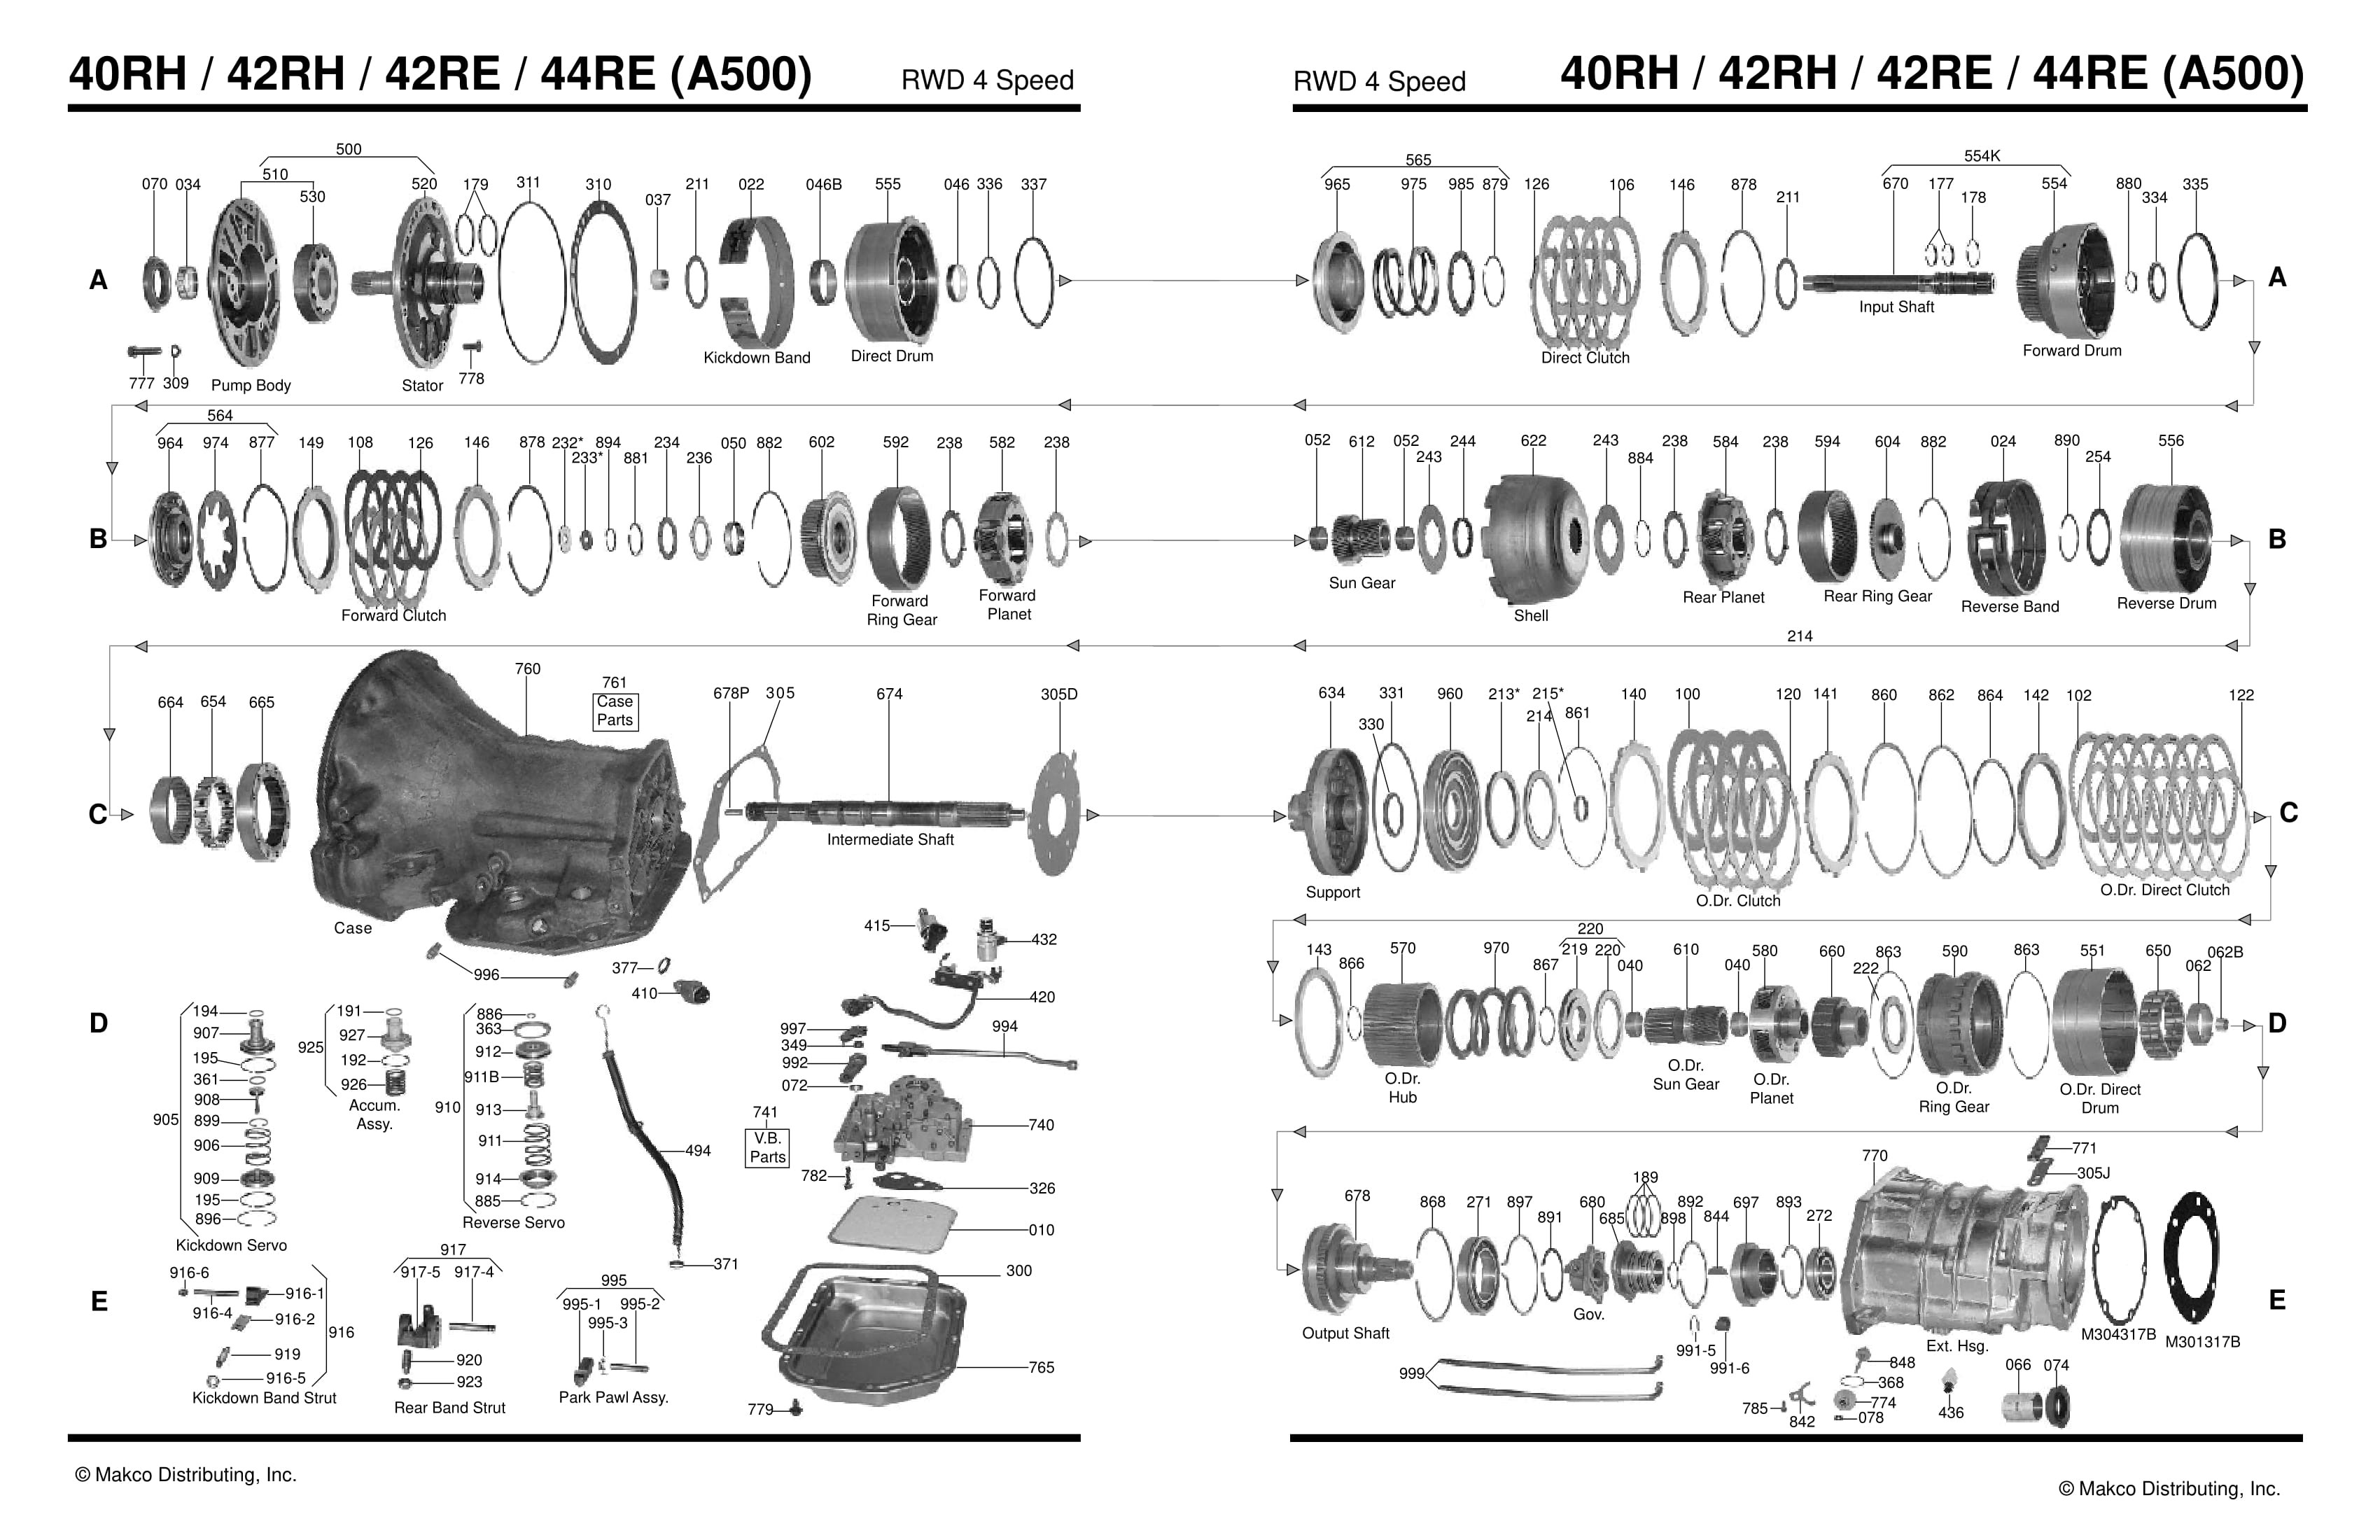 Automatic Transmission Parts Diagram 42re Transmission Parts Diagram Wiring Diagram New Of Automatic Transmission Parts Diagram